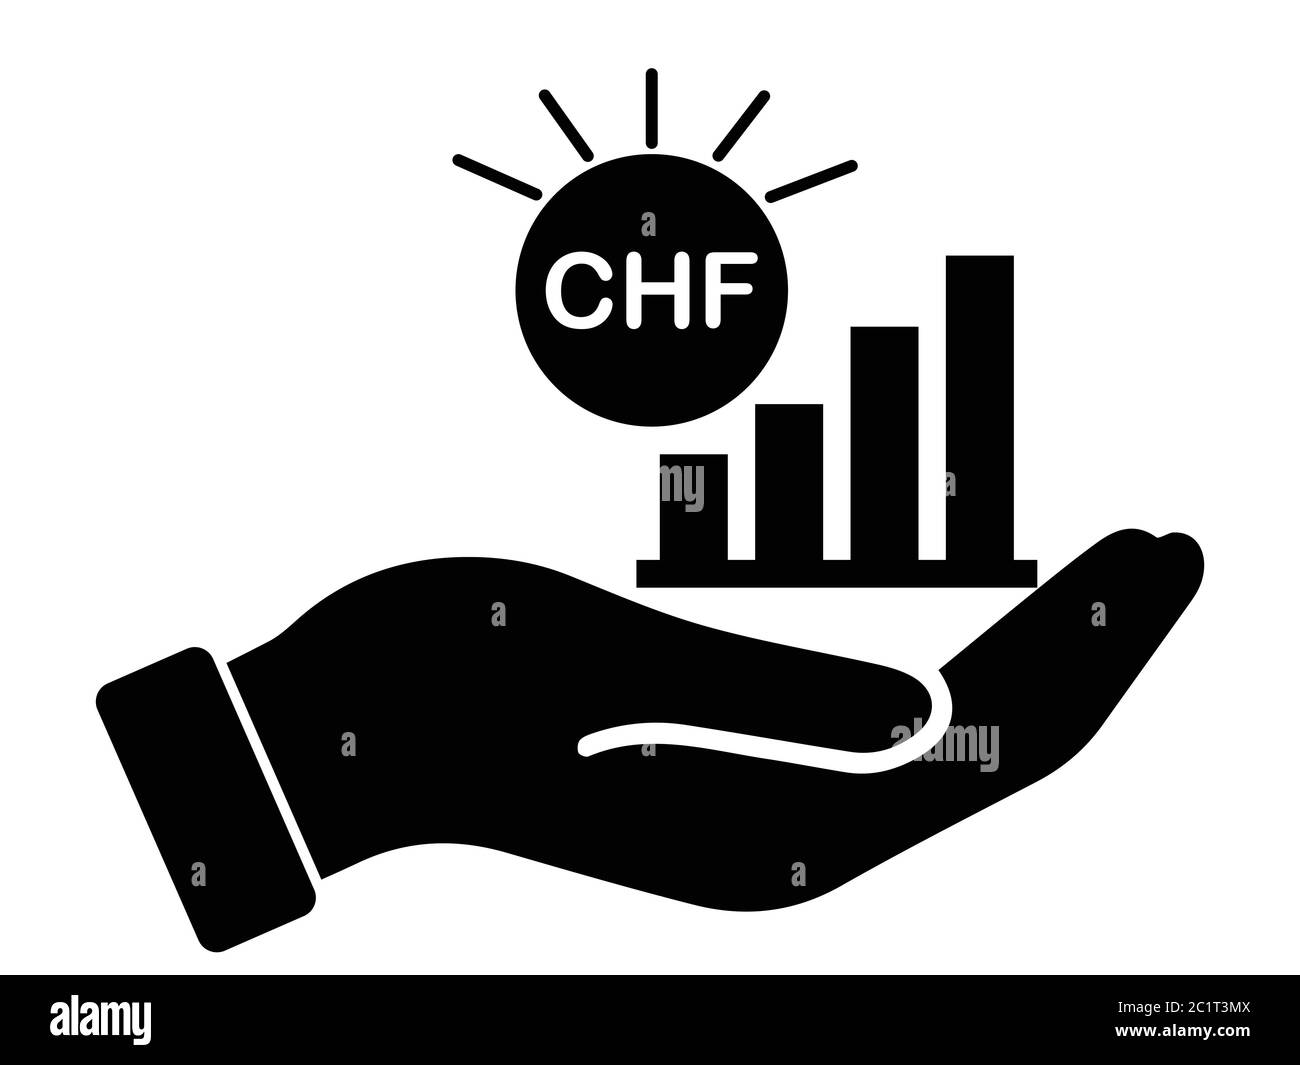 Graphique à barres de croissance CHF franc suisse. Illustration noire isolée sur un fond blanc. Vecteur EPS Illustration de Vecteur